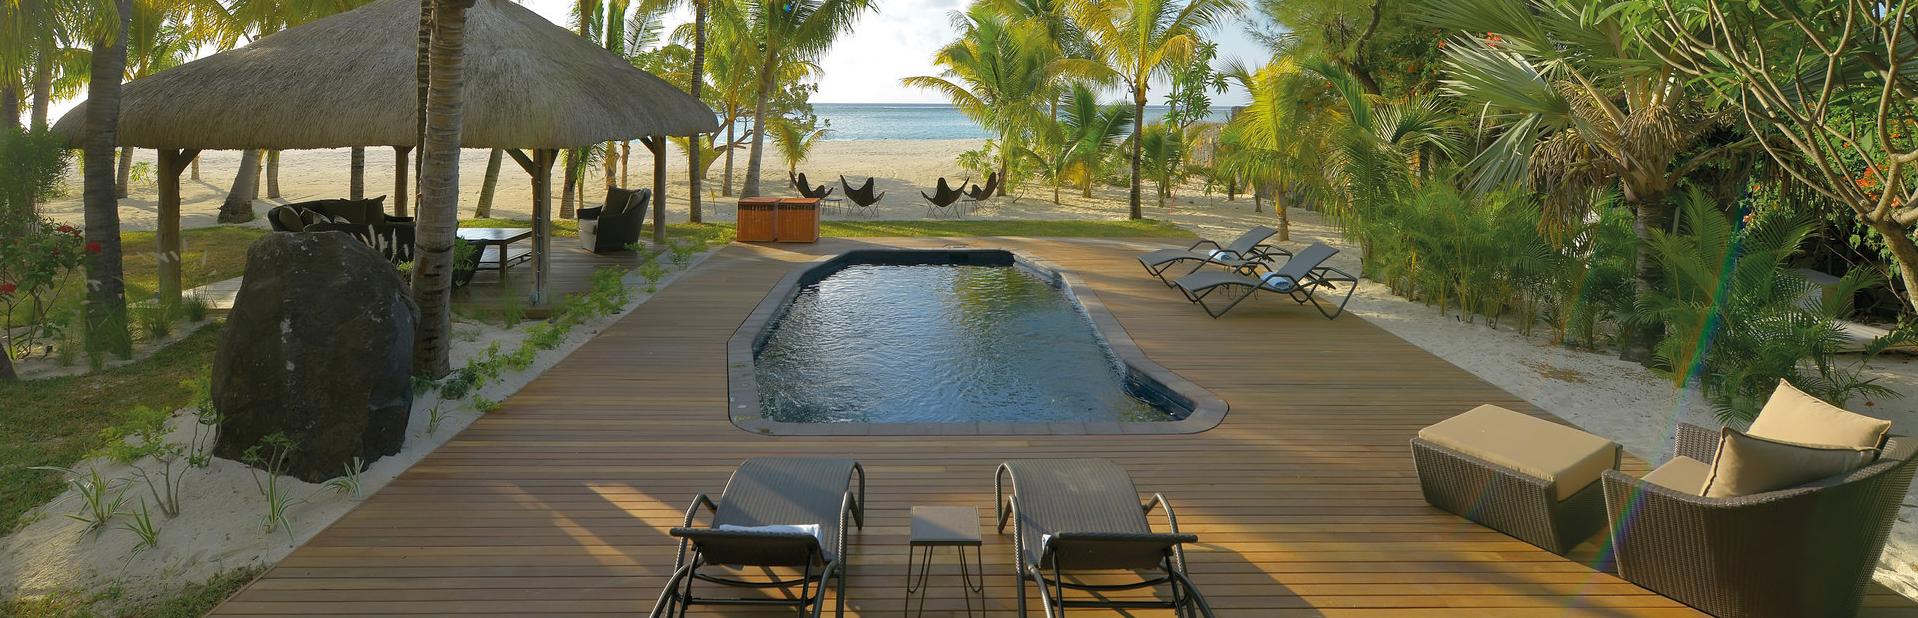 Отель Dinarobin Beachcomber Golf Resort & Spa на Маврикии